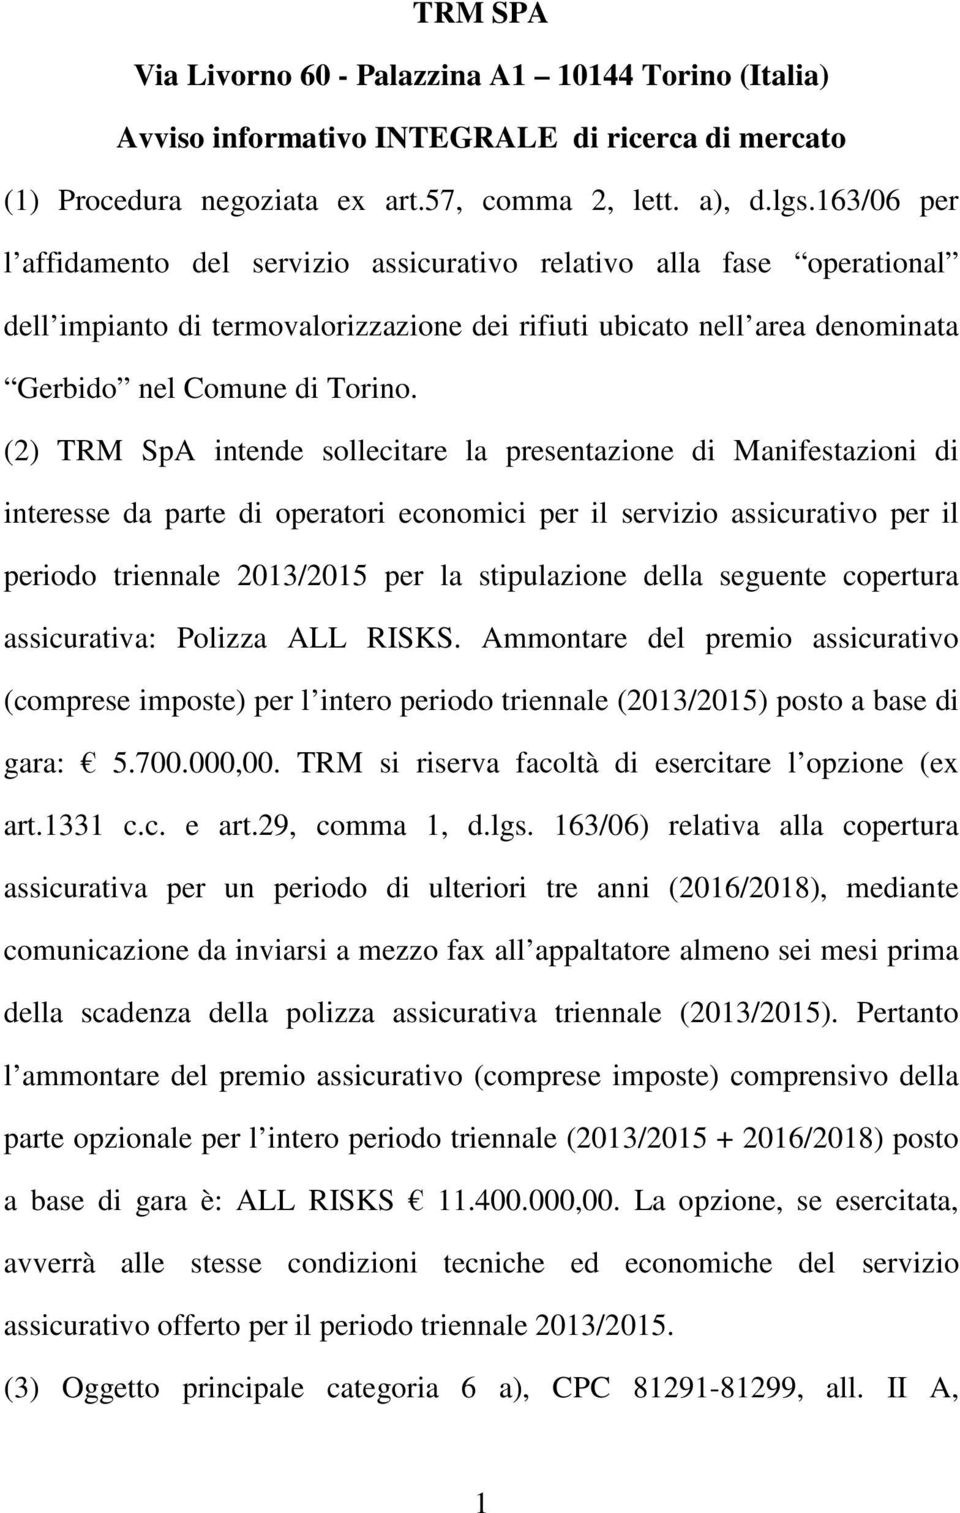 (2) TRM SpA intende sollecitare la presentazione di Manifestazioni di interesse da parte di operatori economici per il servizio assicurativo per il periodo triennale 2013/2015 per la stipulazione